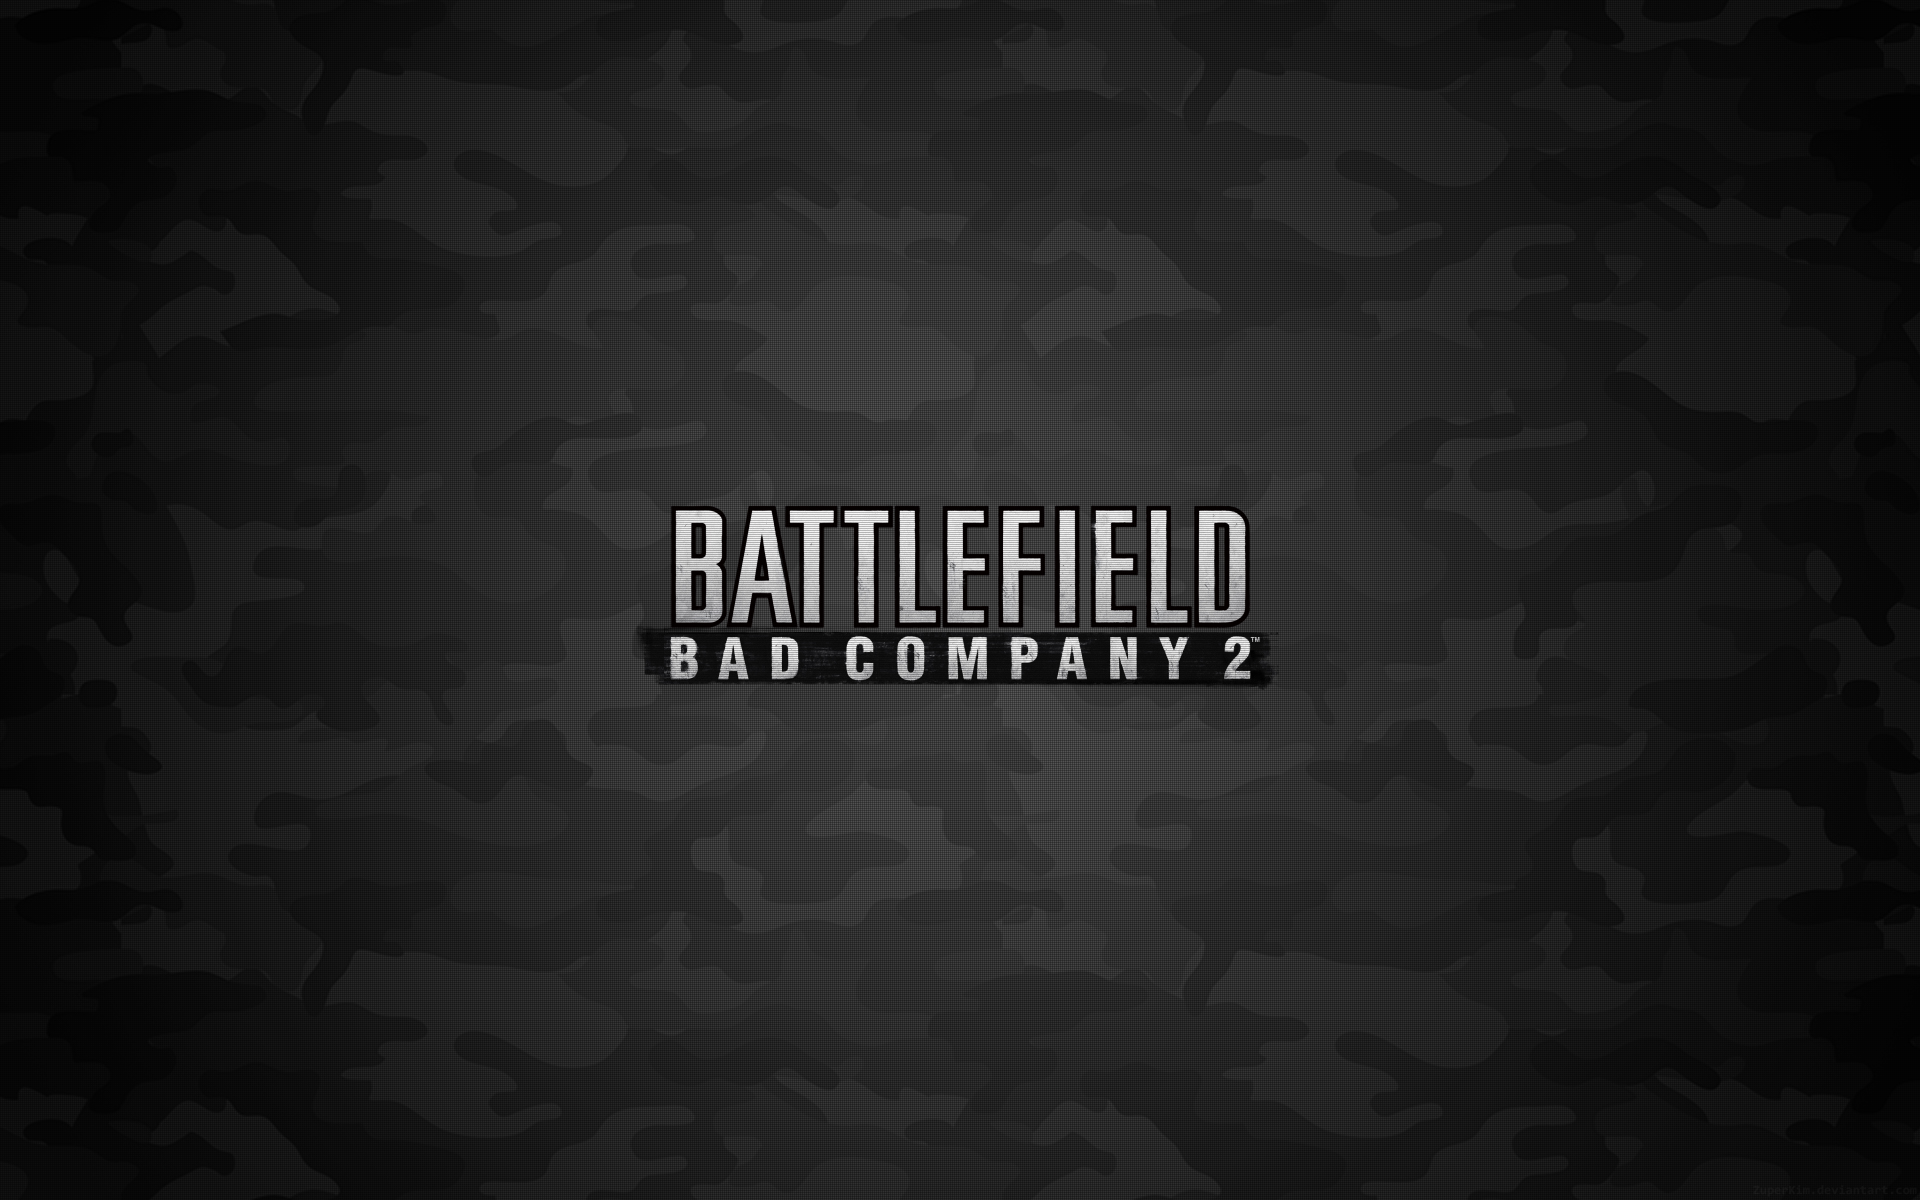 поле боя, Battlefield Bad Company 2, игры - обои на рабочий стол